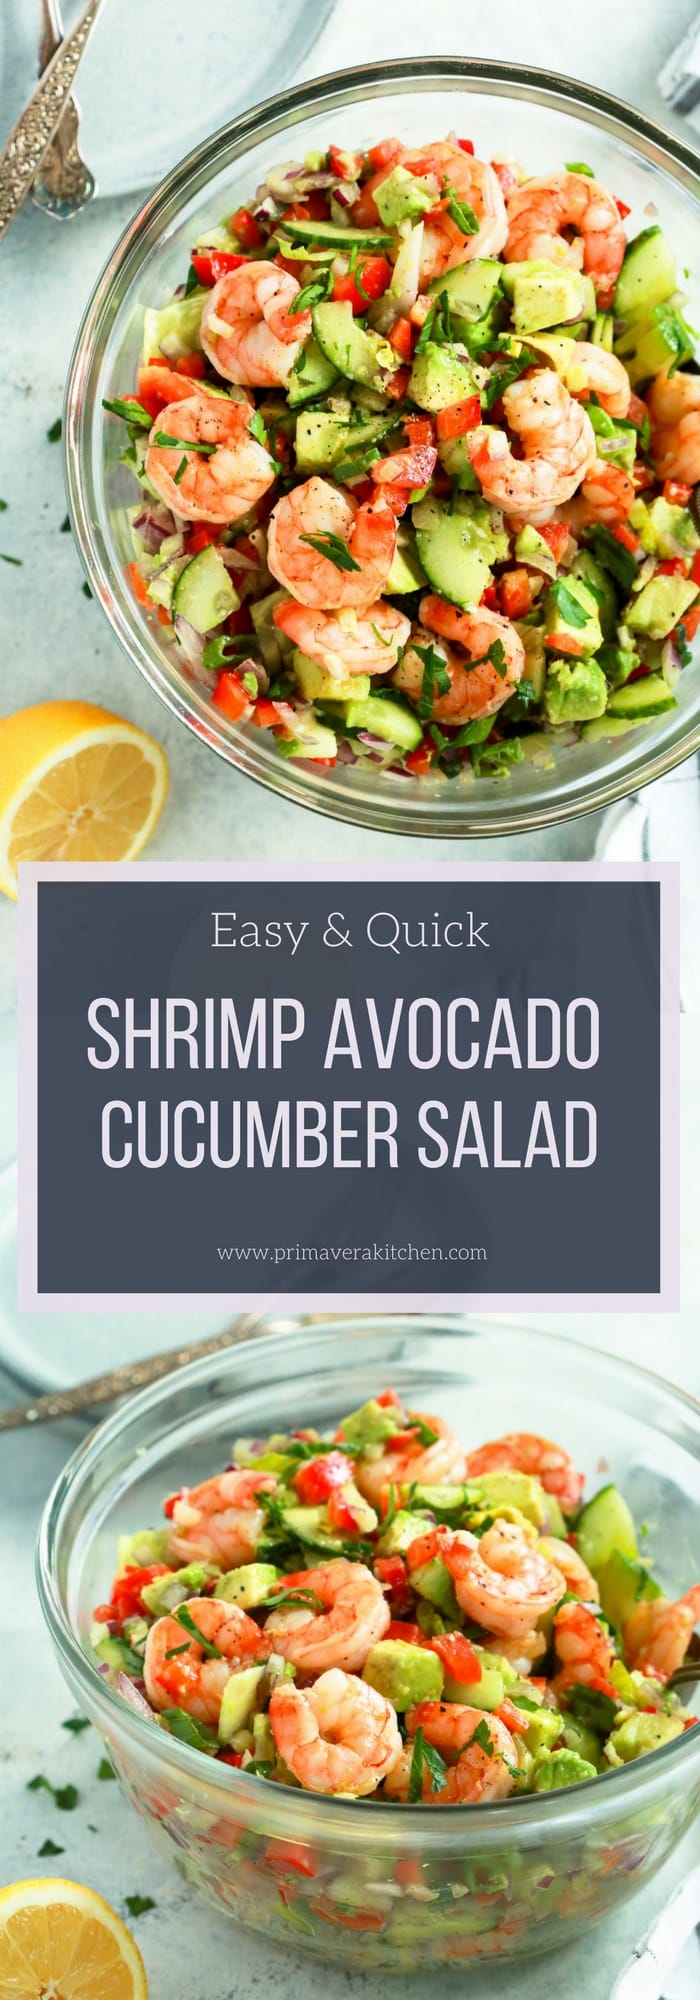 Shrimp Avocado Cucumber Salad